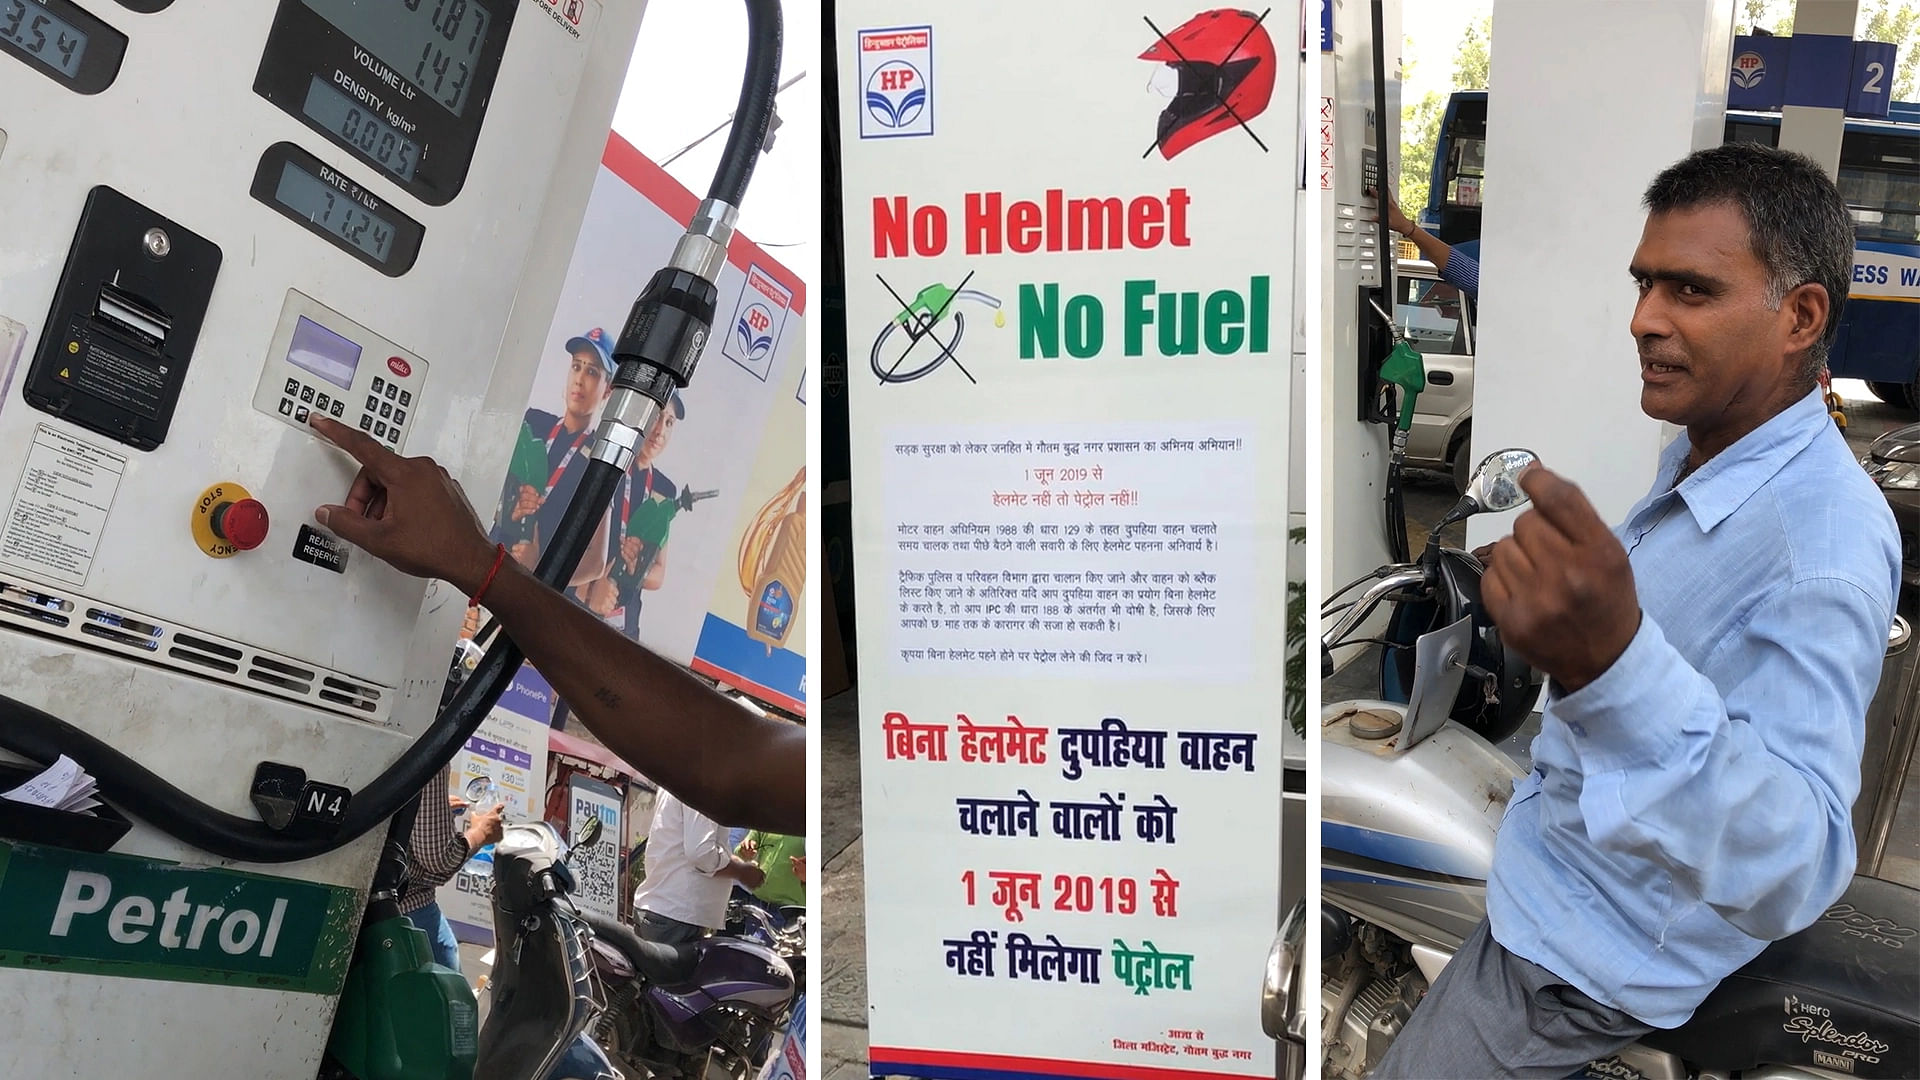 नोएडा में ‘हेलमेट नहीं तो ईंधन नहीं’ फॉर्मूला लागू किया गया है.